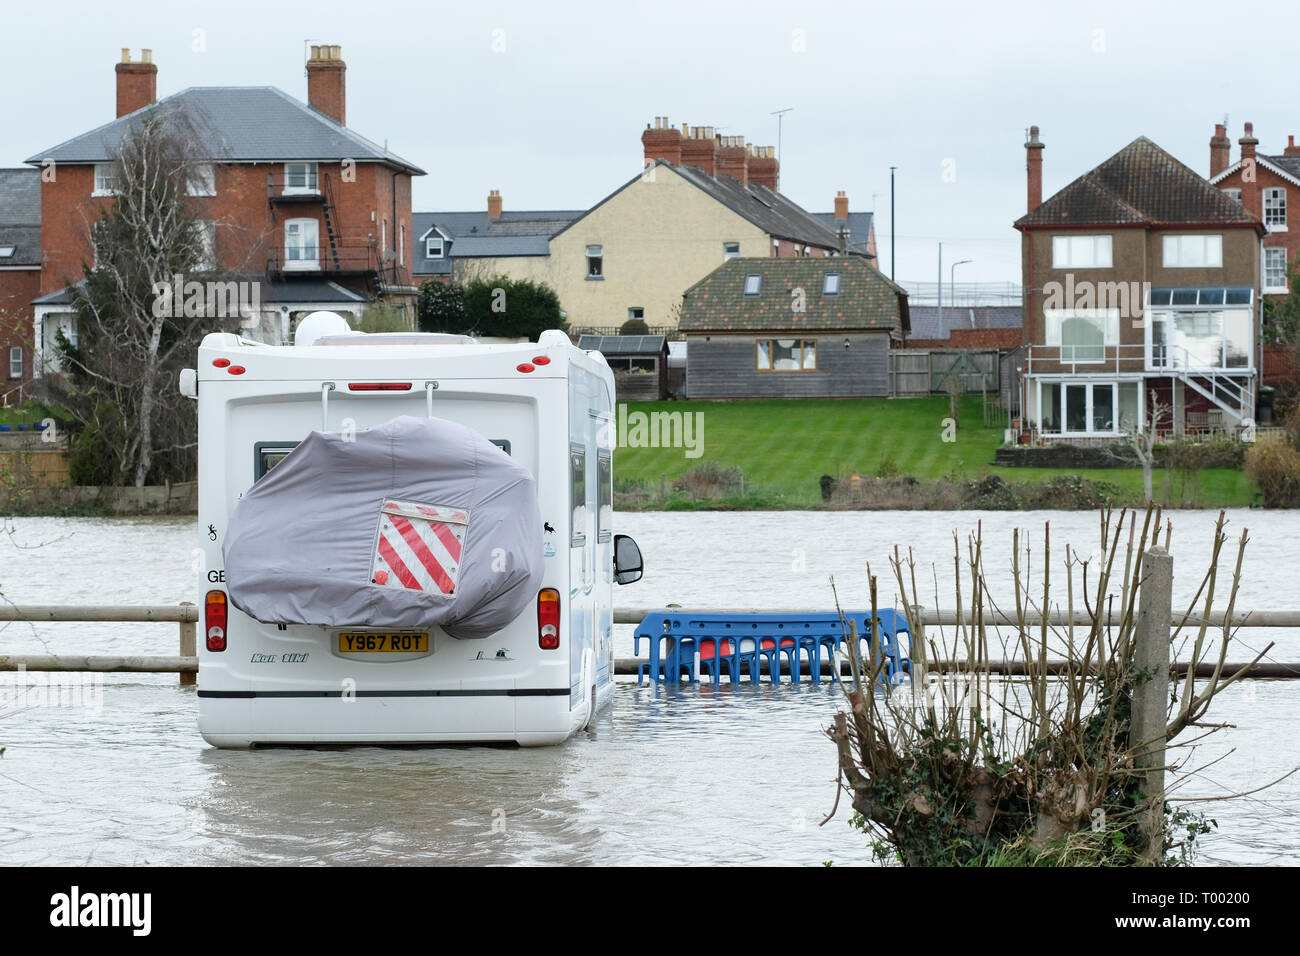 Hereford, Herefordshire, UK - Samedi 16 Mars 2019 - Royaume-Uni - un camping-car entouré par les eaux de crue dans un parking à côté de la rivière Wye dans Hereford - l'Agence de l'Environnement dispose actuellement de 17 avertissements d'inondations et 57 d'alerte d'inondations à travers l'Angleterre avec plus de fortes pluies prévues dans le pays de Galles et l'Ouest au cours de la fin de semaine. Photo Steven Mai /Alamy Live News Banque D'Images